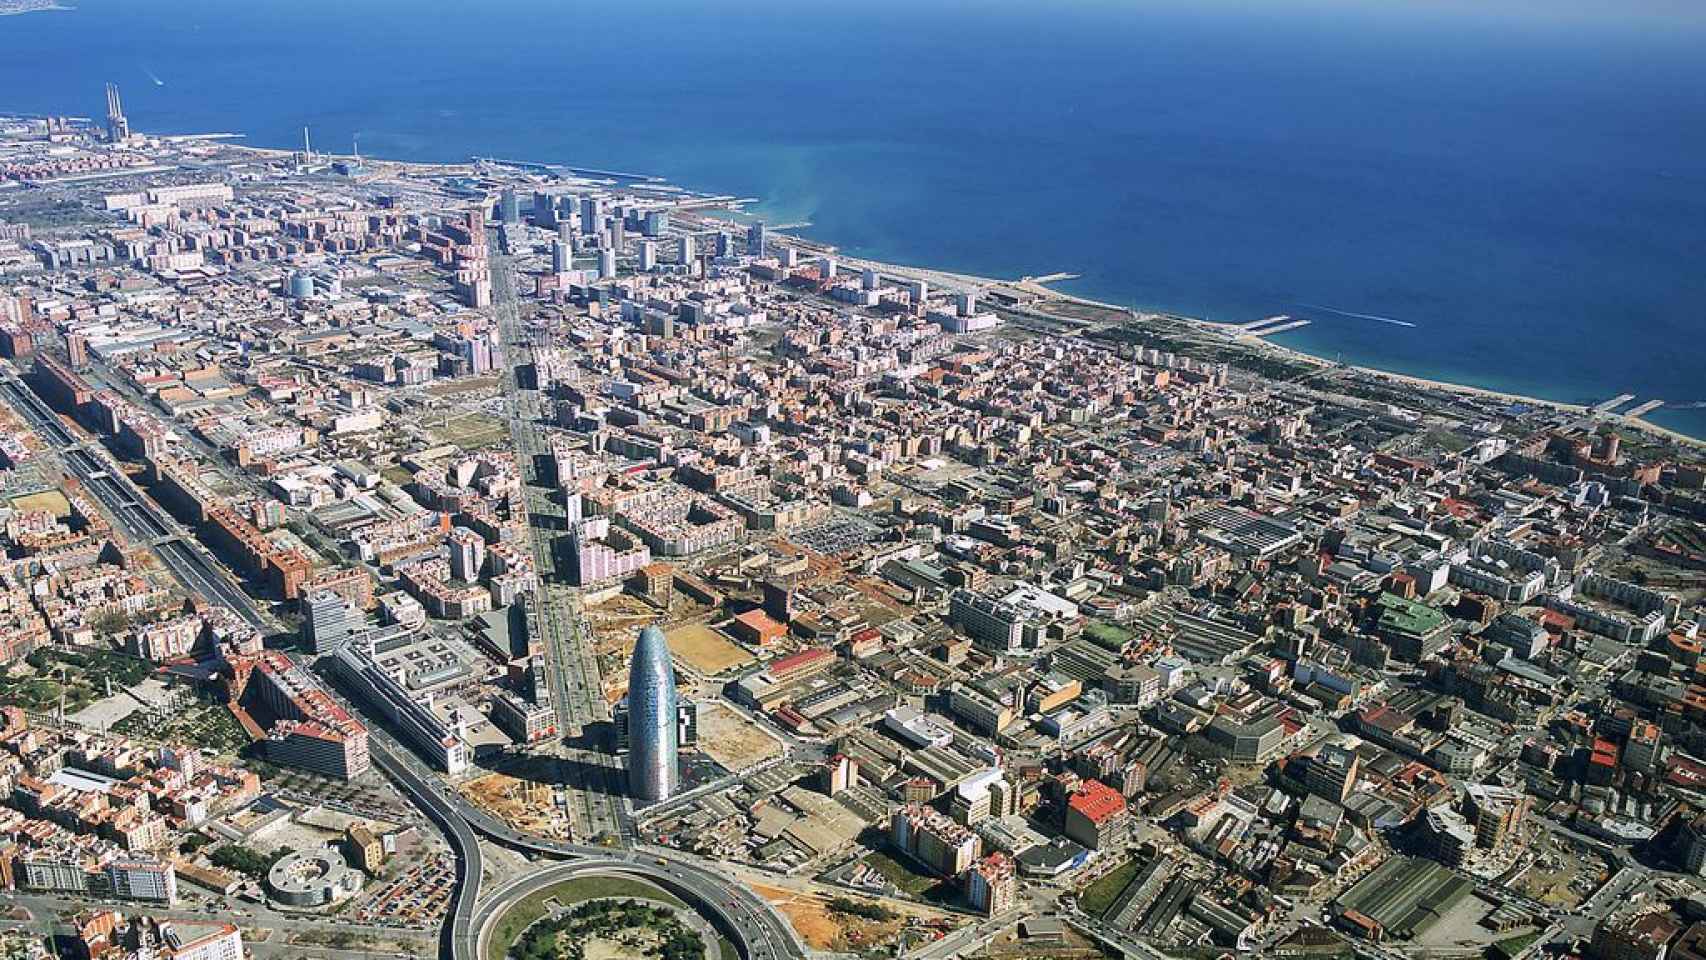 Vista panorámica de Barcelona poniendo el foco en Les Glòries de Barcelona